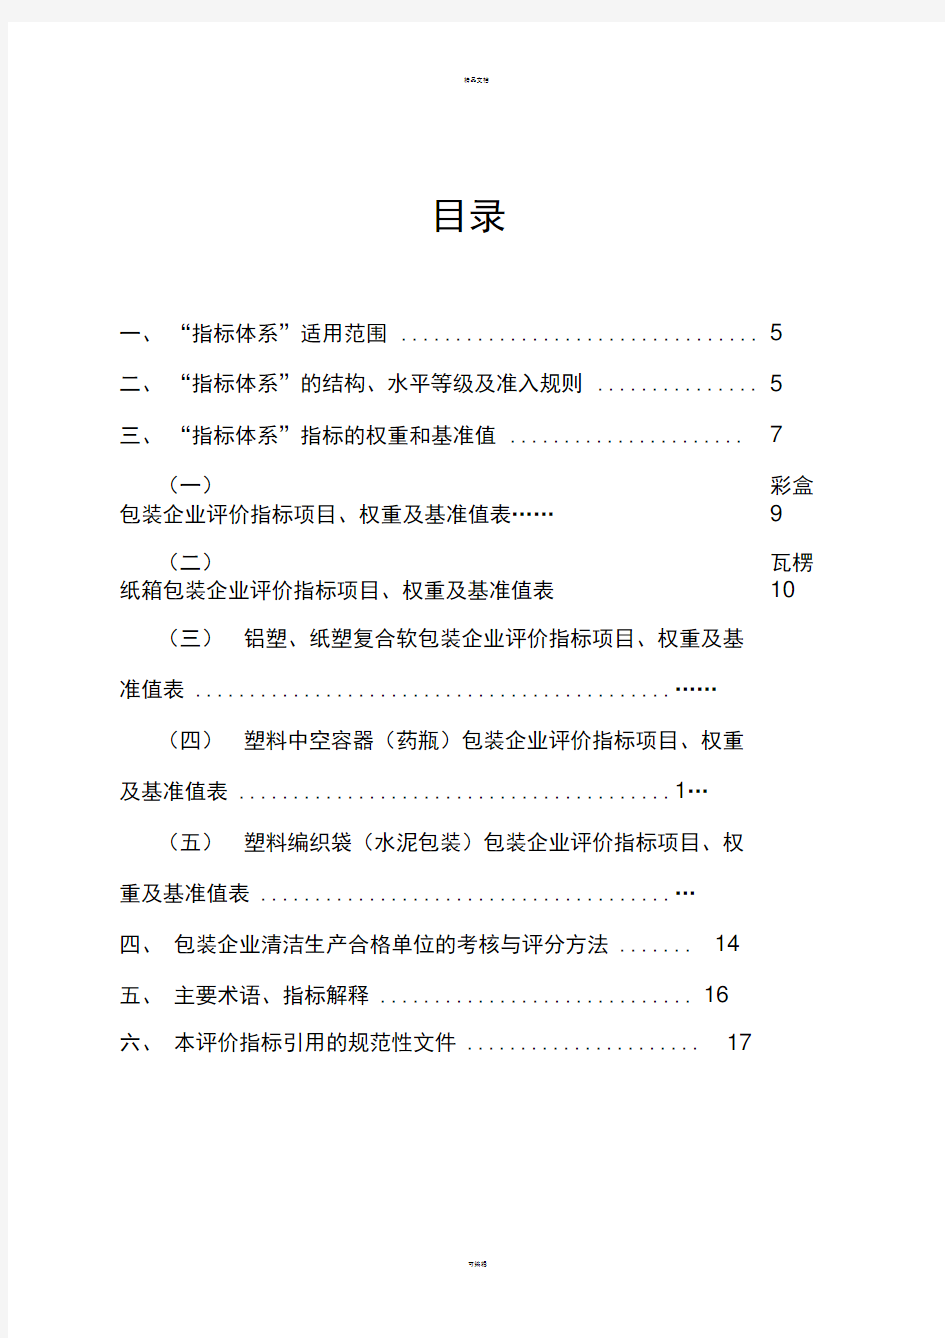 云南省包装行业清洁生产合格单位评价指标体系